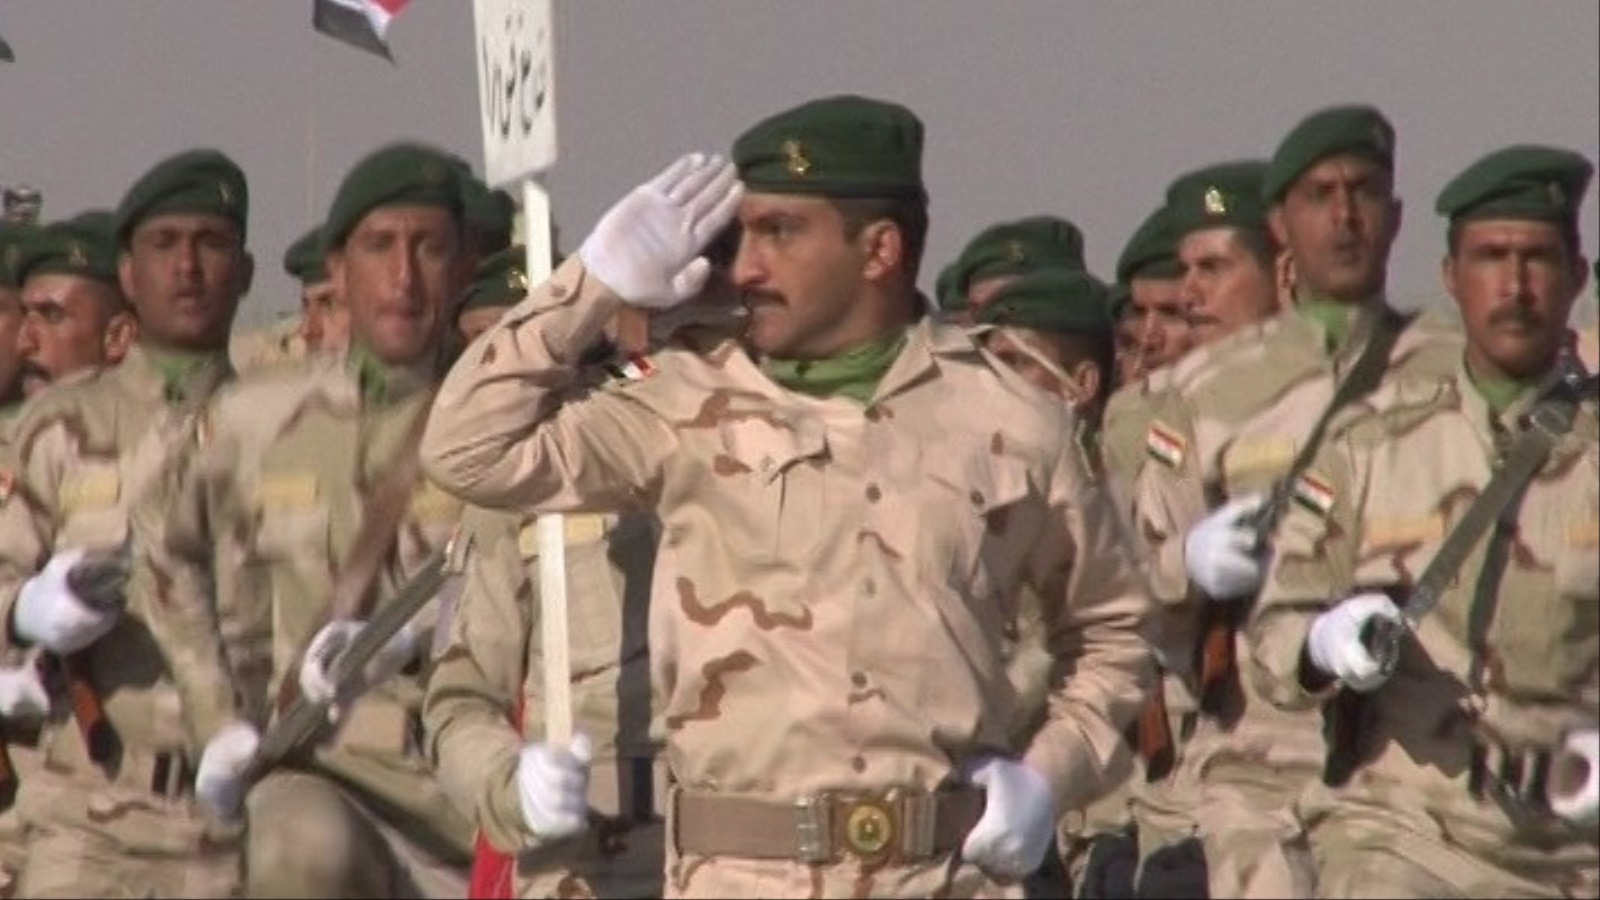 الجيش العراقي احتل المرتبة 59 من مجموع 133 دولة وفقا لتصنيف موقع أميركي